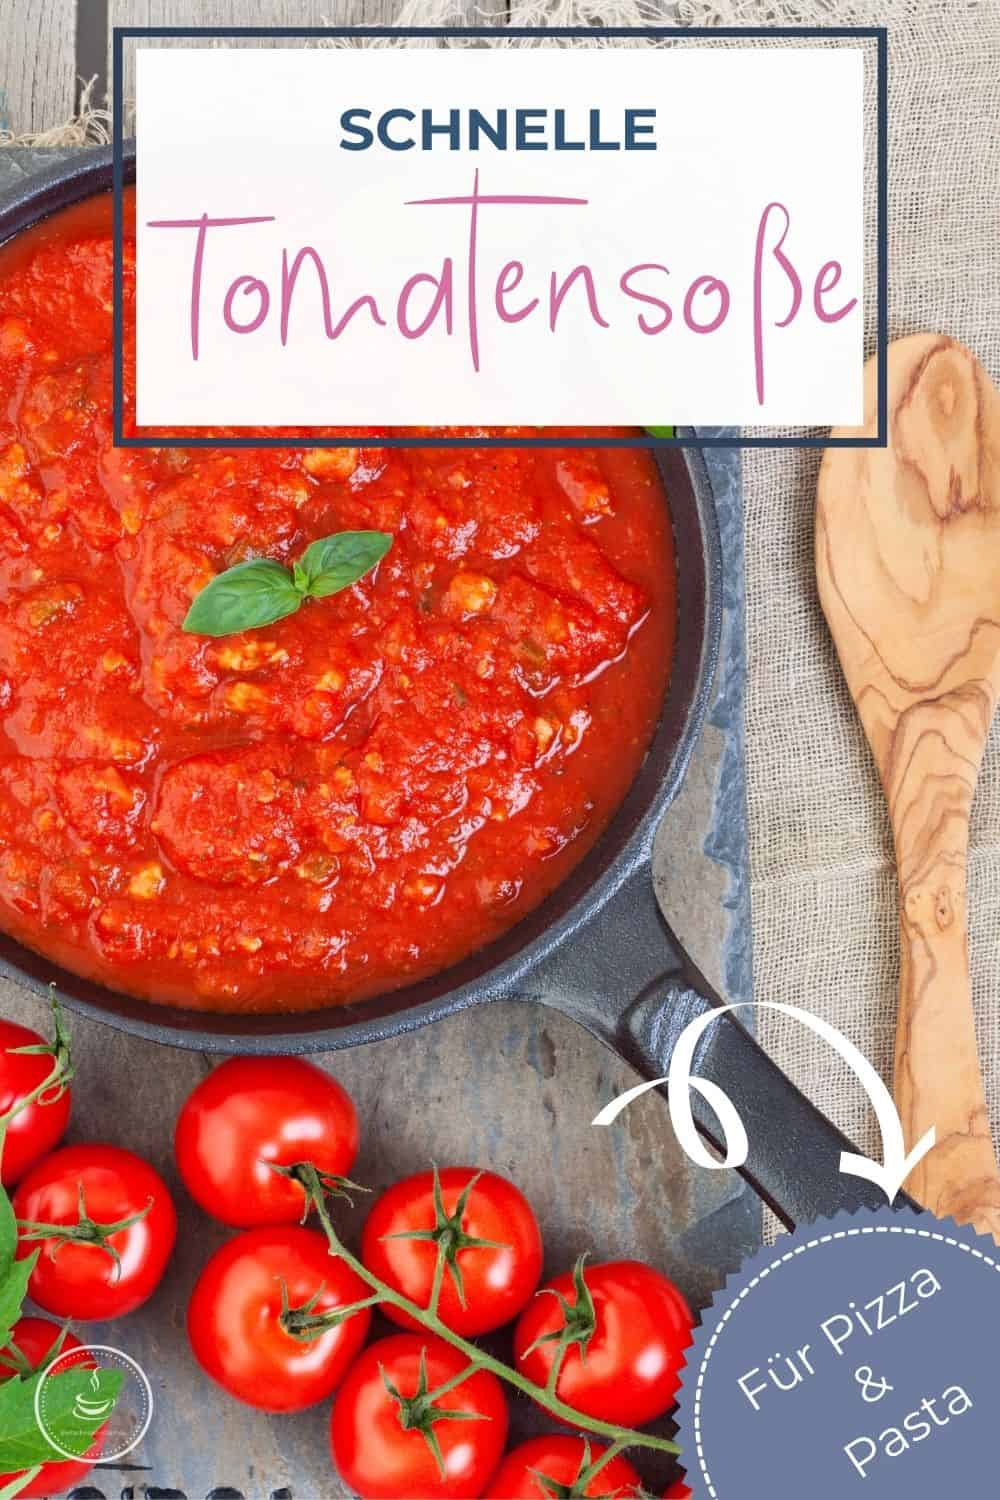 Schnelle Tomatensoße - Einfach mal einfach